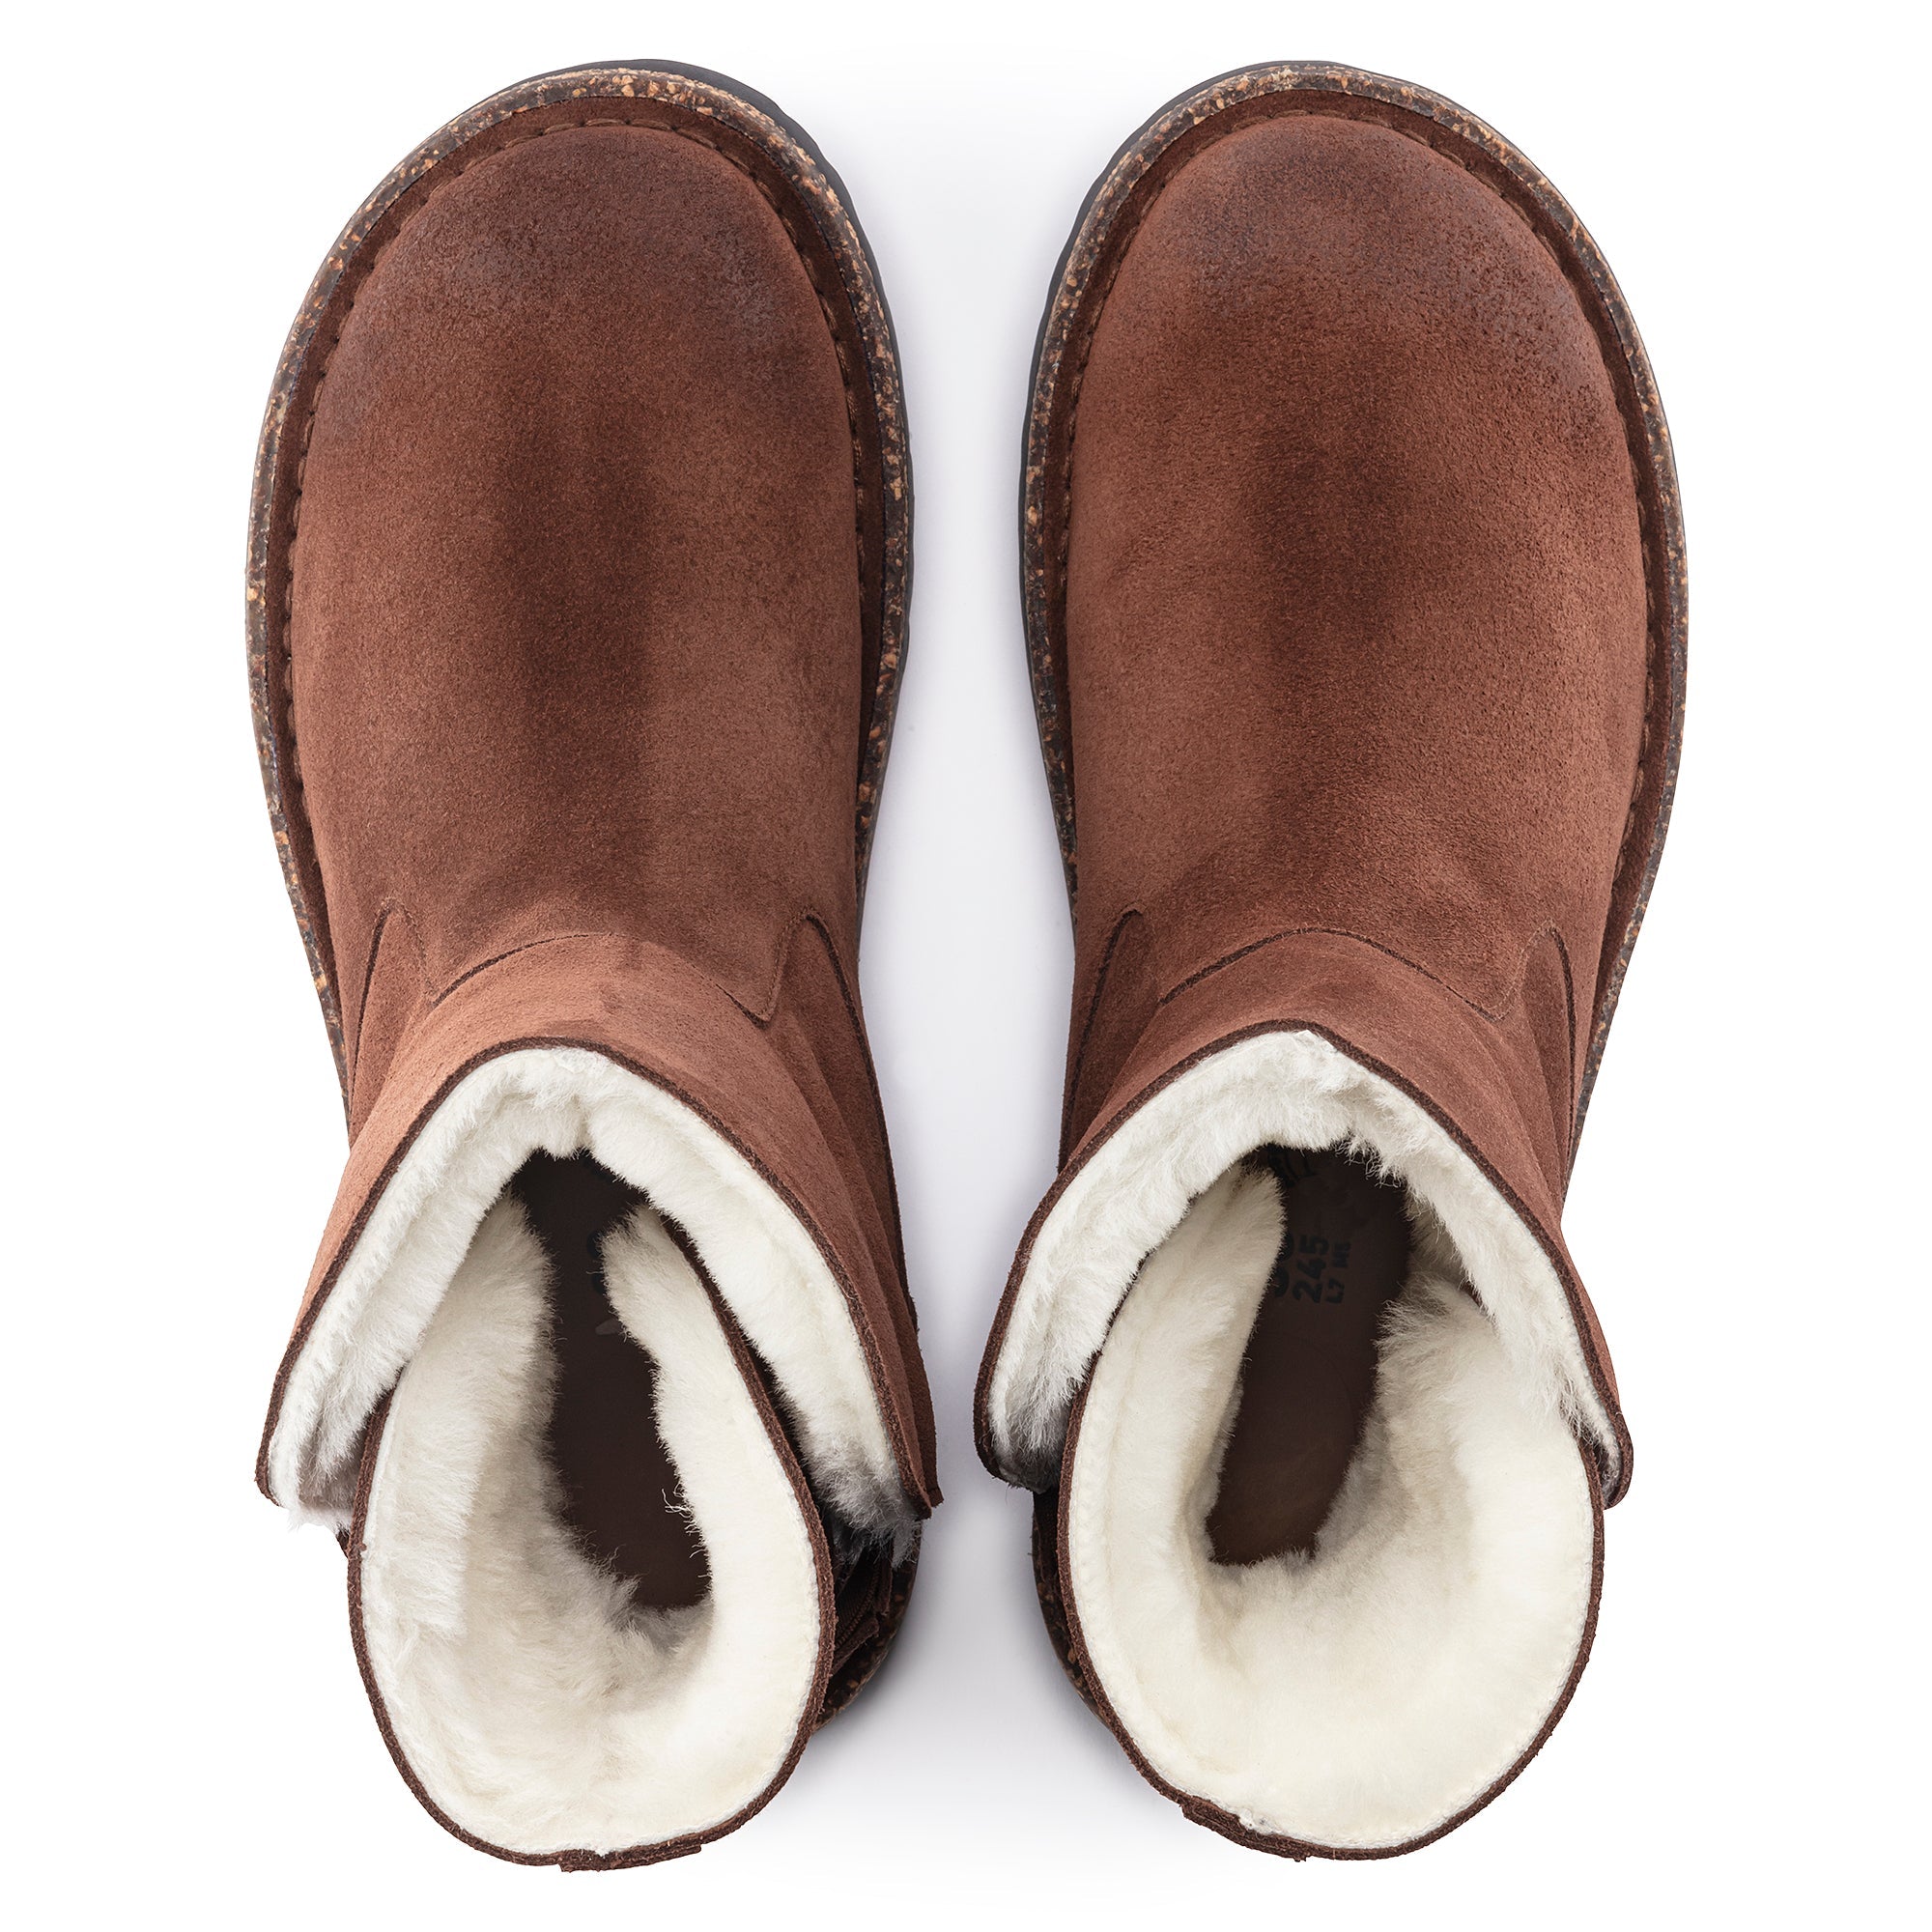 Birkenstock Uppsala Shearling Suede Leather Boots Women's